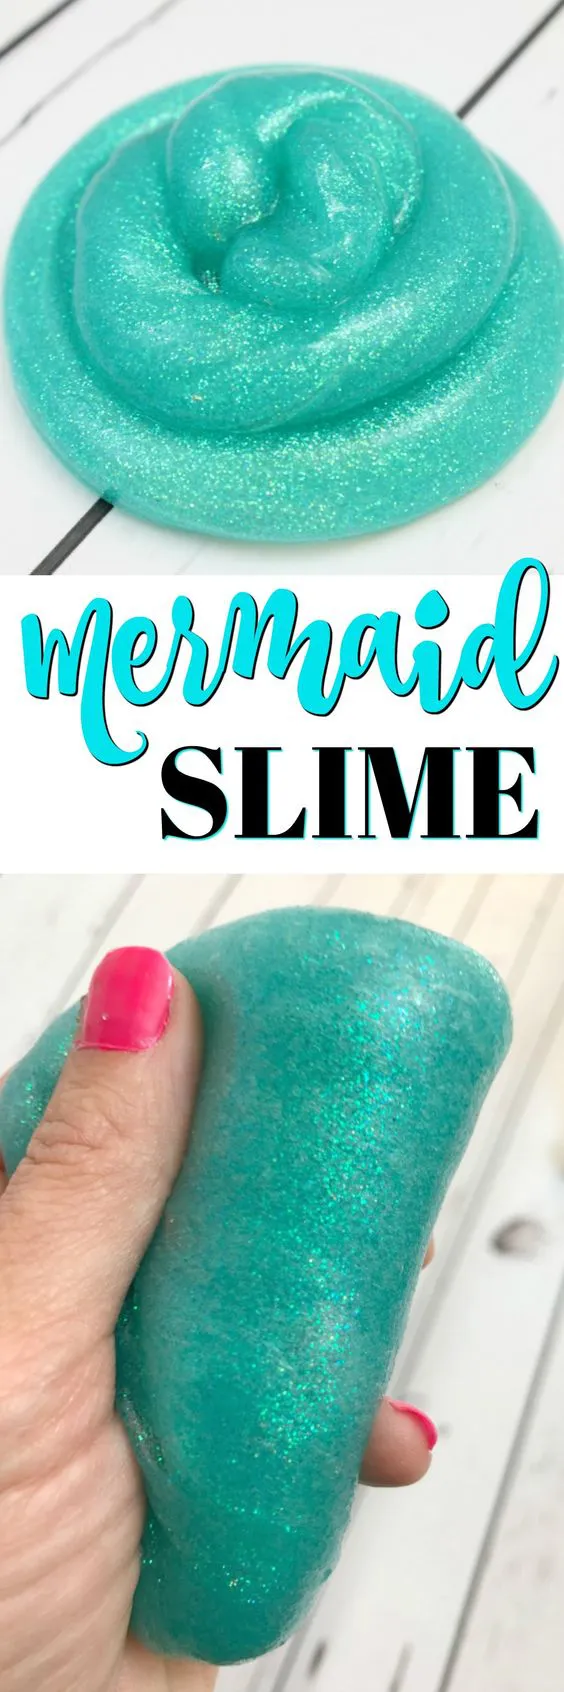 slime azul mermaid